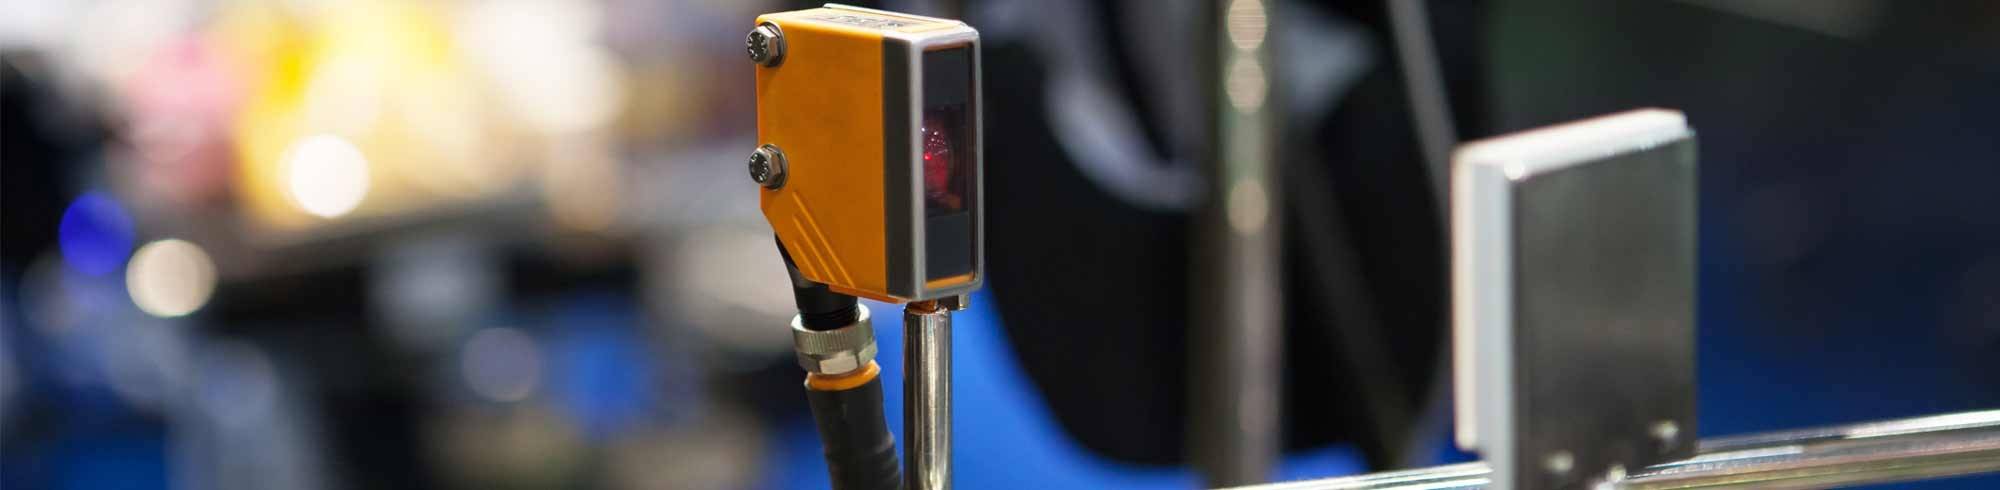 Optical Sensor Provides Digital Scanning for Automated Line